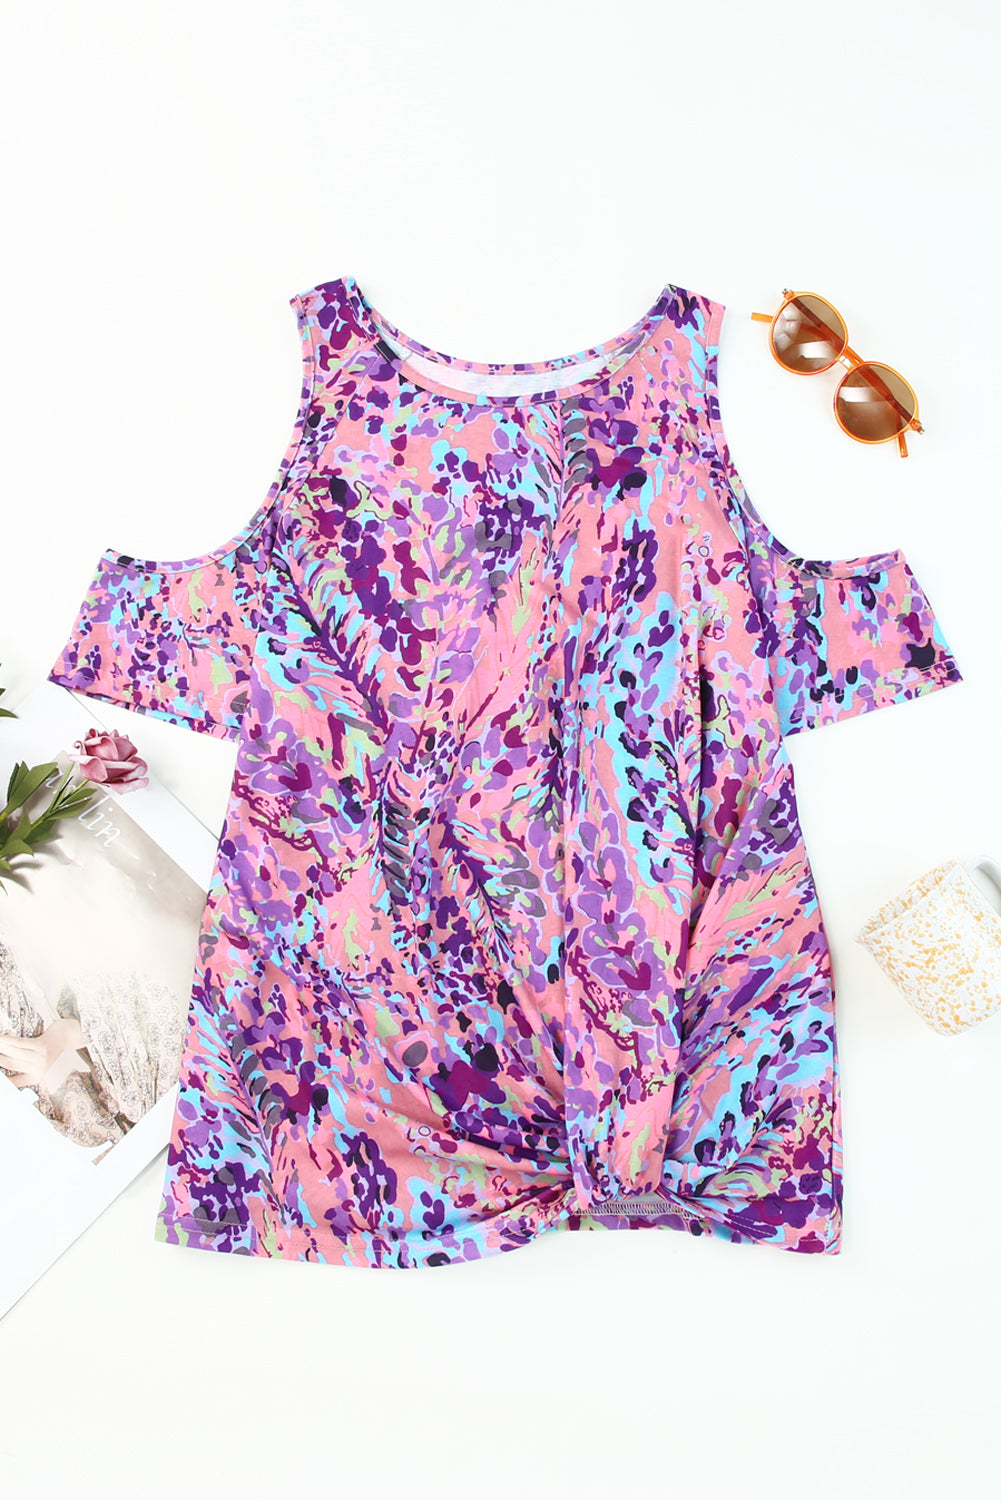 Mehrfarbige, schulterfreie Bluse mit lavendelfarbenem Blumenmuster